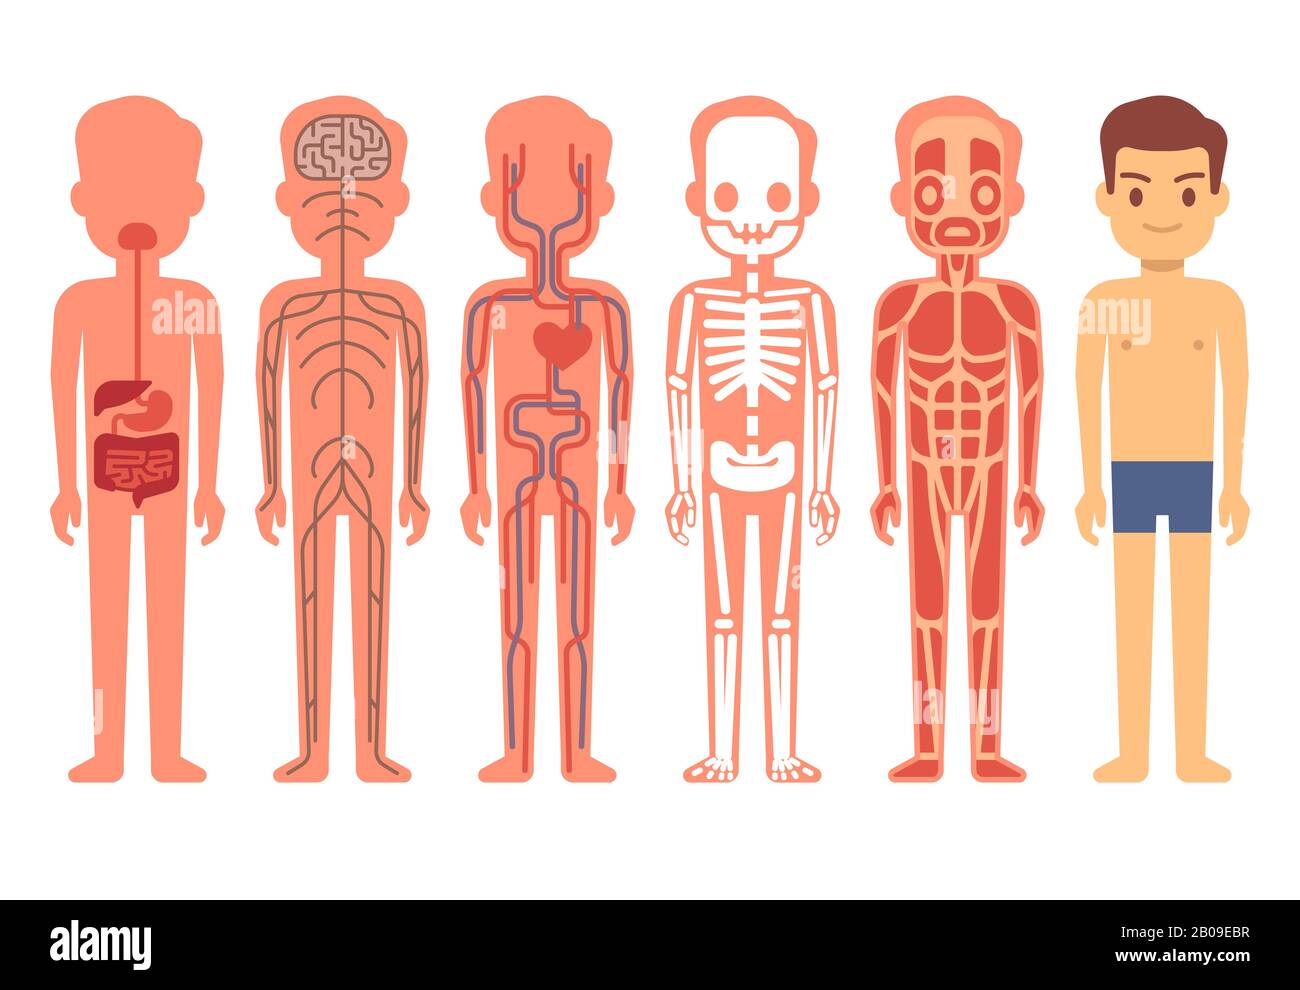 Anatomievektor des menschlichen Körpers. Männliches Skelett, Muskel-, Kreislauf-, Nerven- und Verdauungssystem. Cartoon-Illustration für das menschliche Funktionssystem Stock Vektor